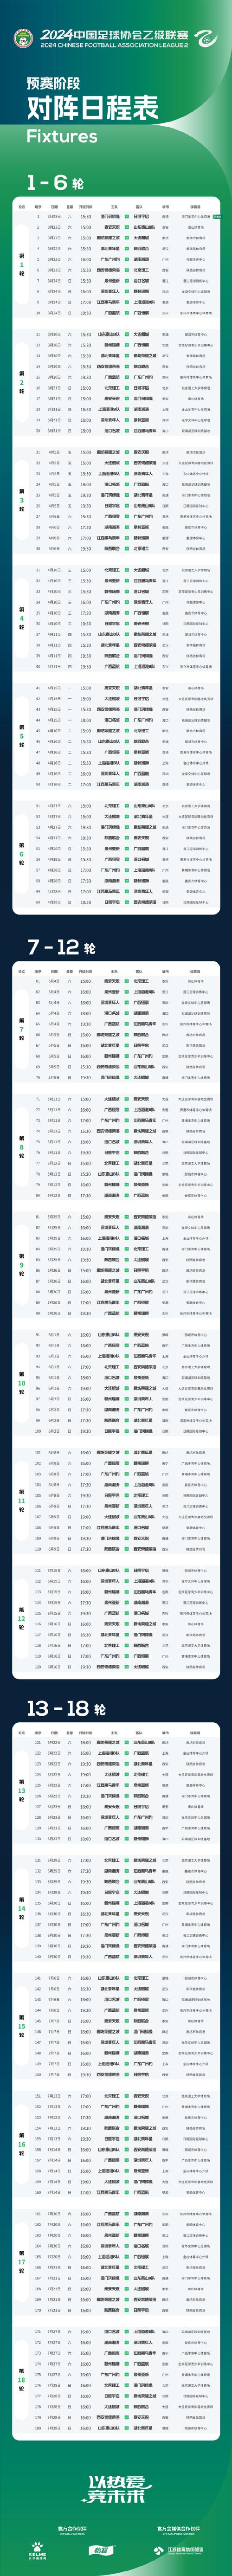 中国足球赛程